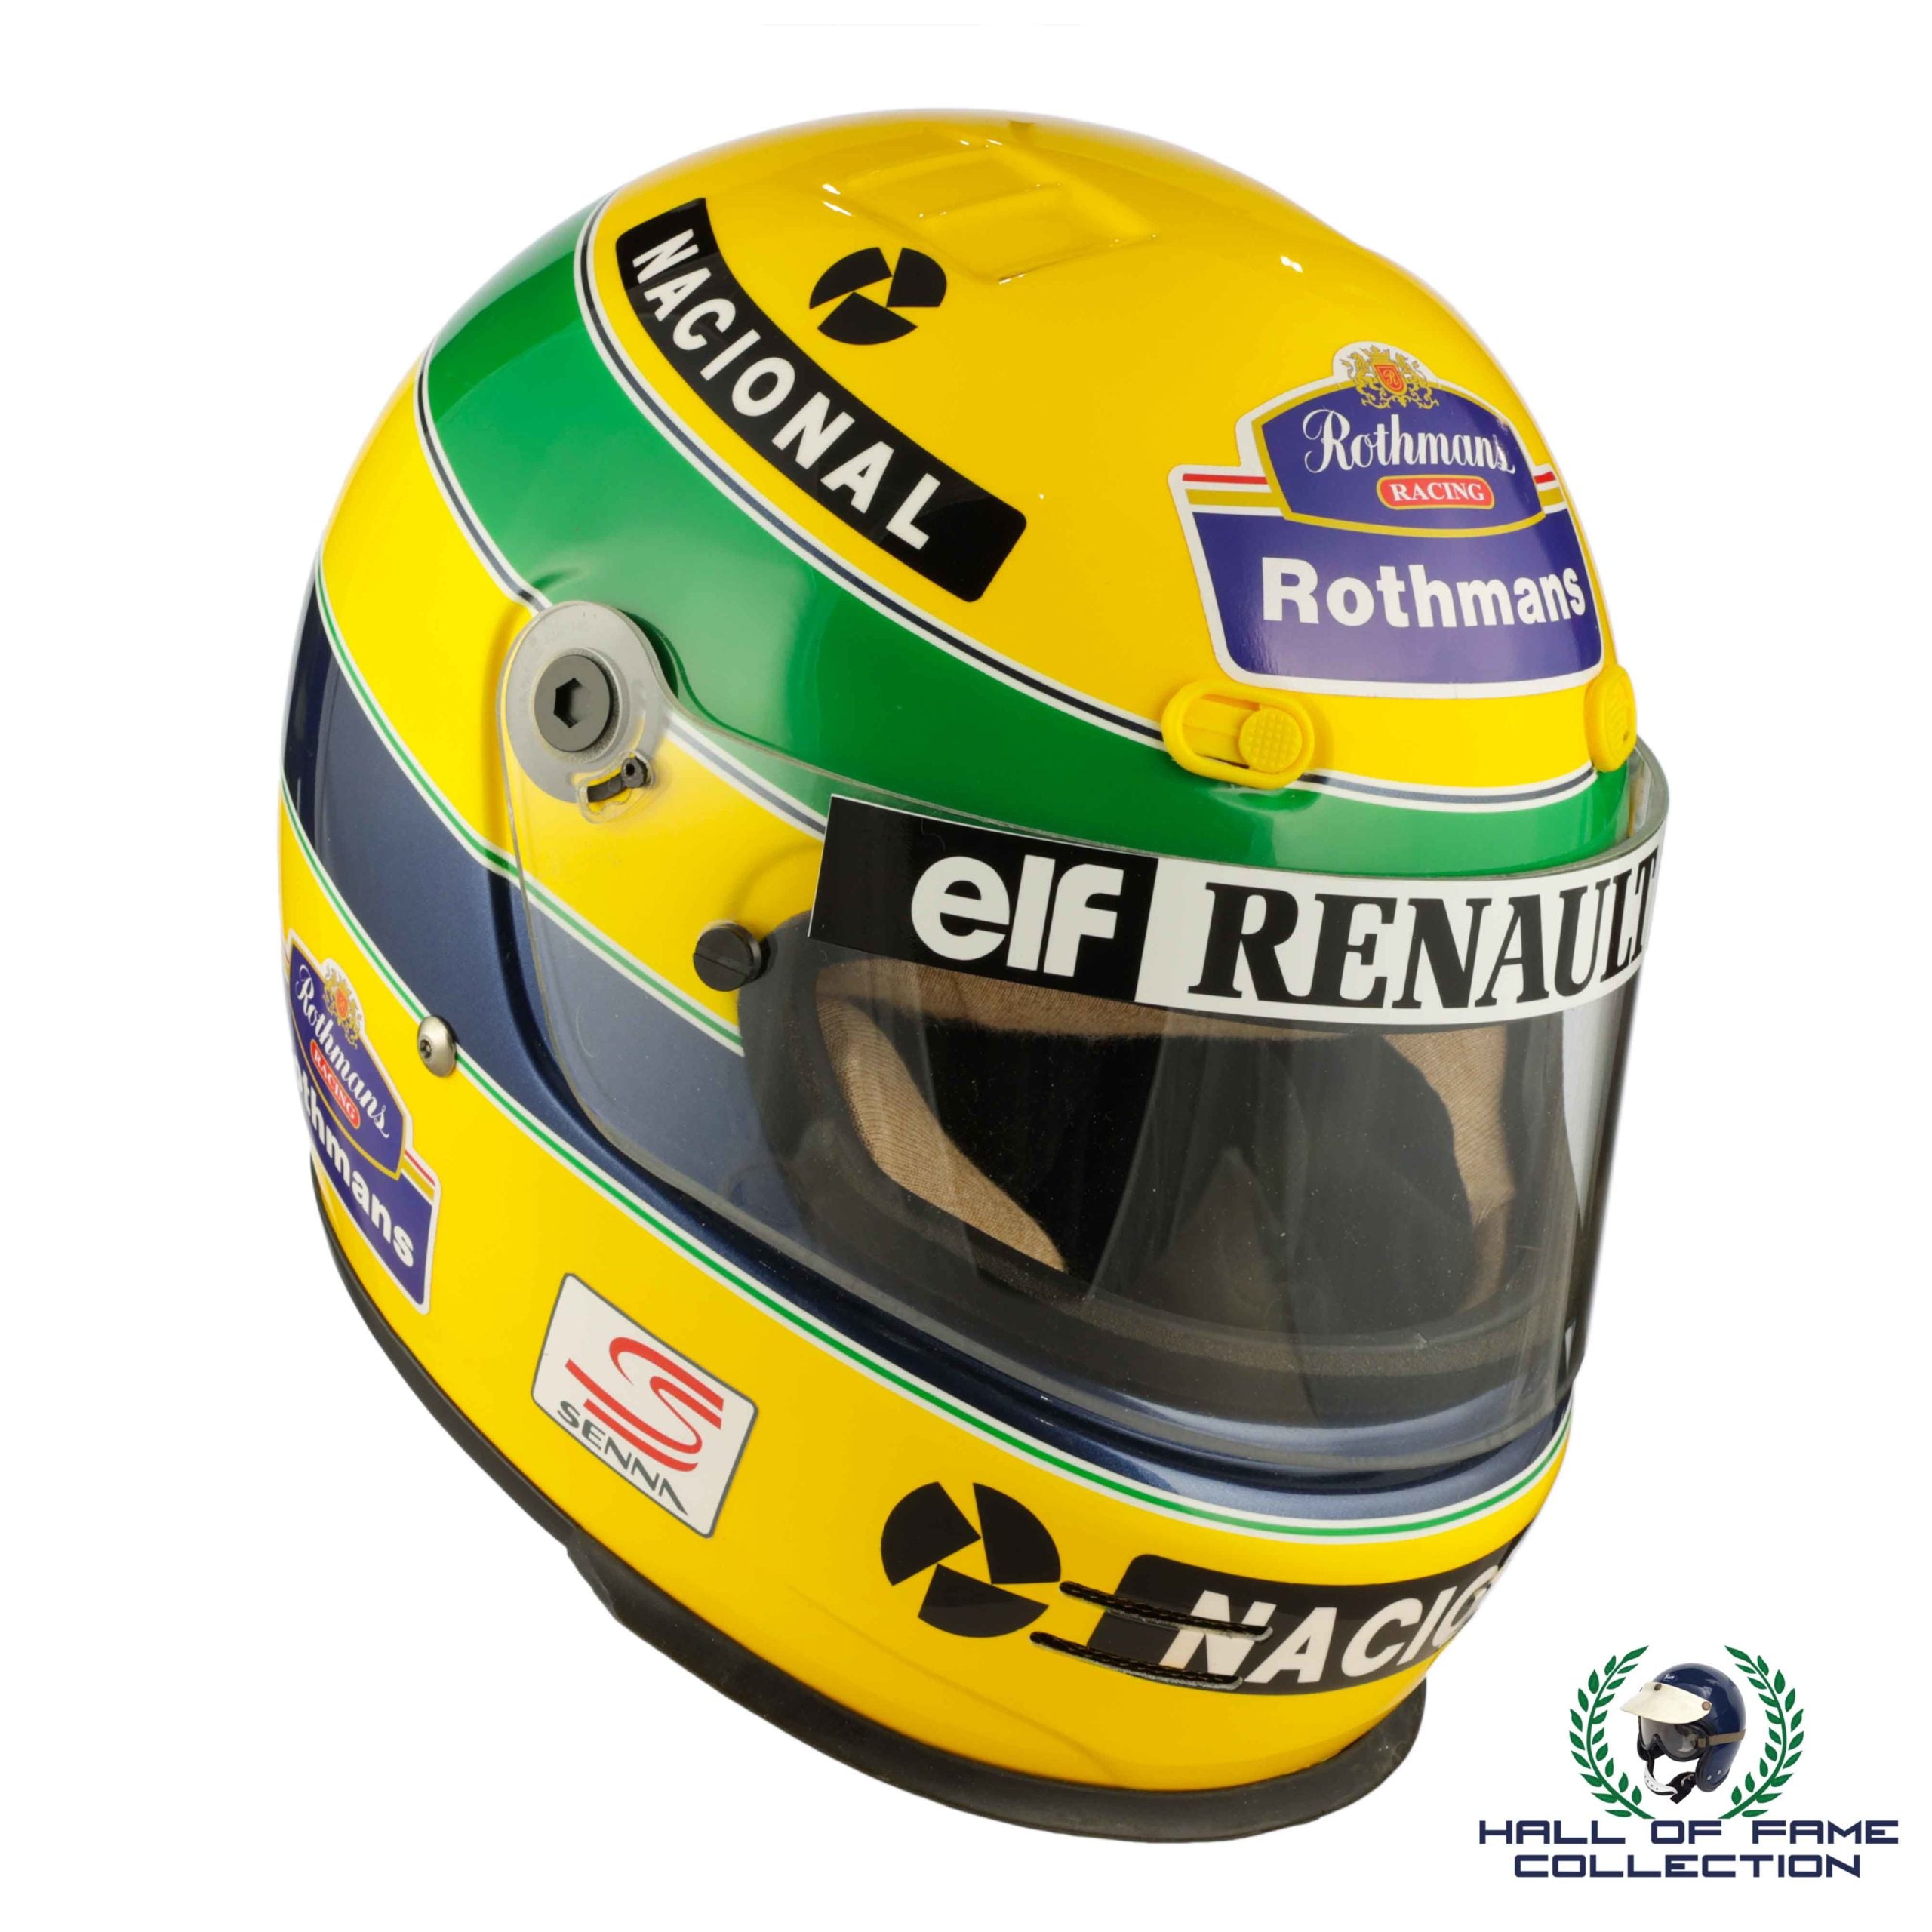 1994 Ayrton Senna Replica Bell M3 Rothmans Williams Renault F1 Helmet